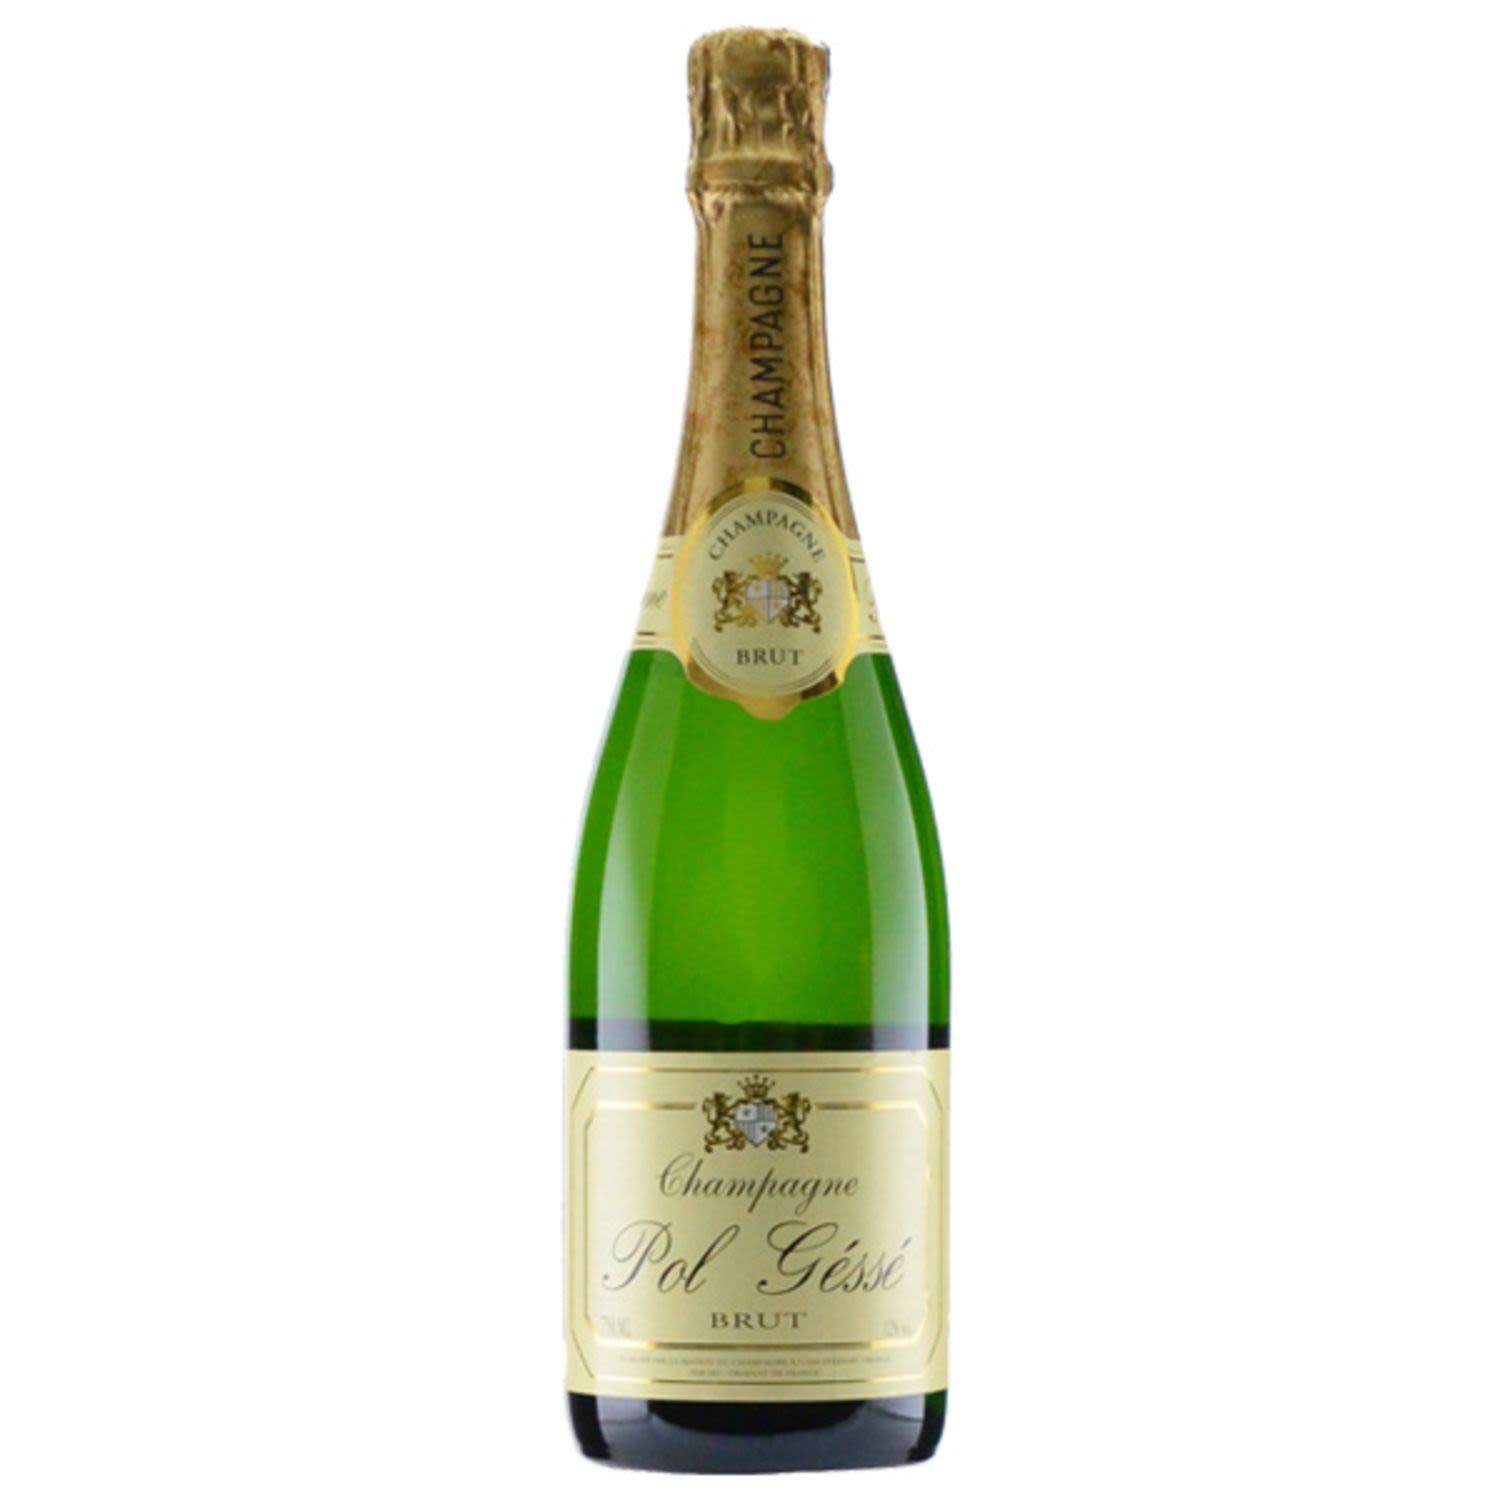 Pol Gesse Brut Champagne NV 750mL Bottle